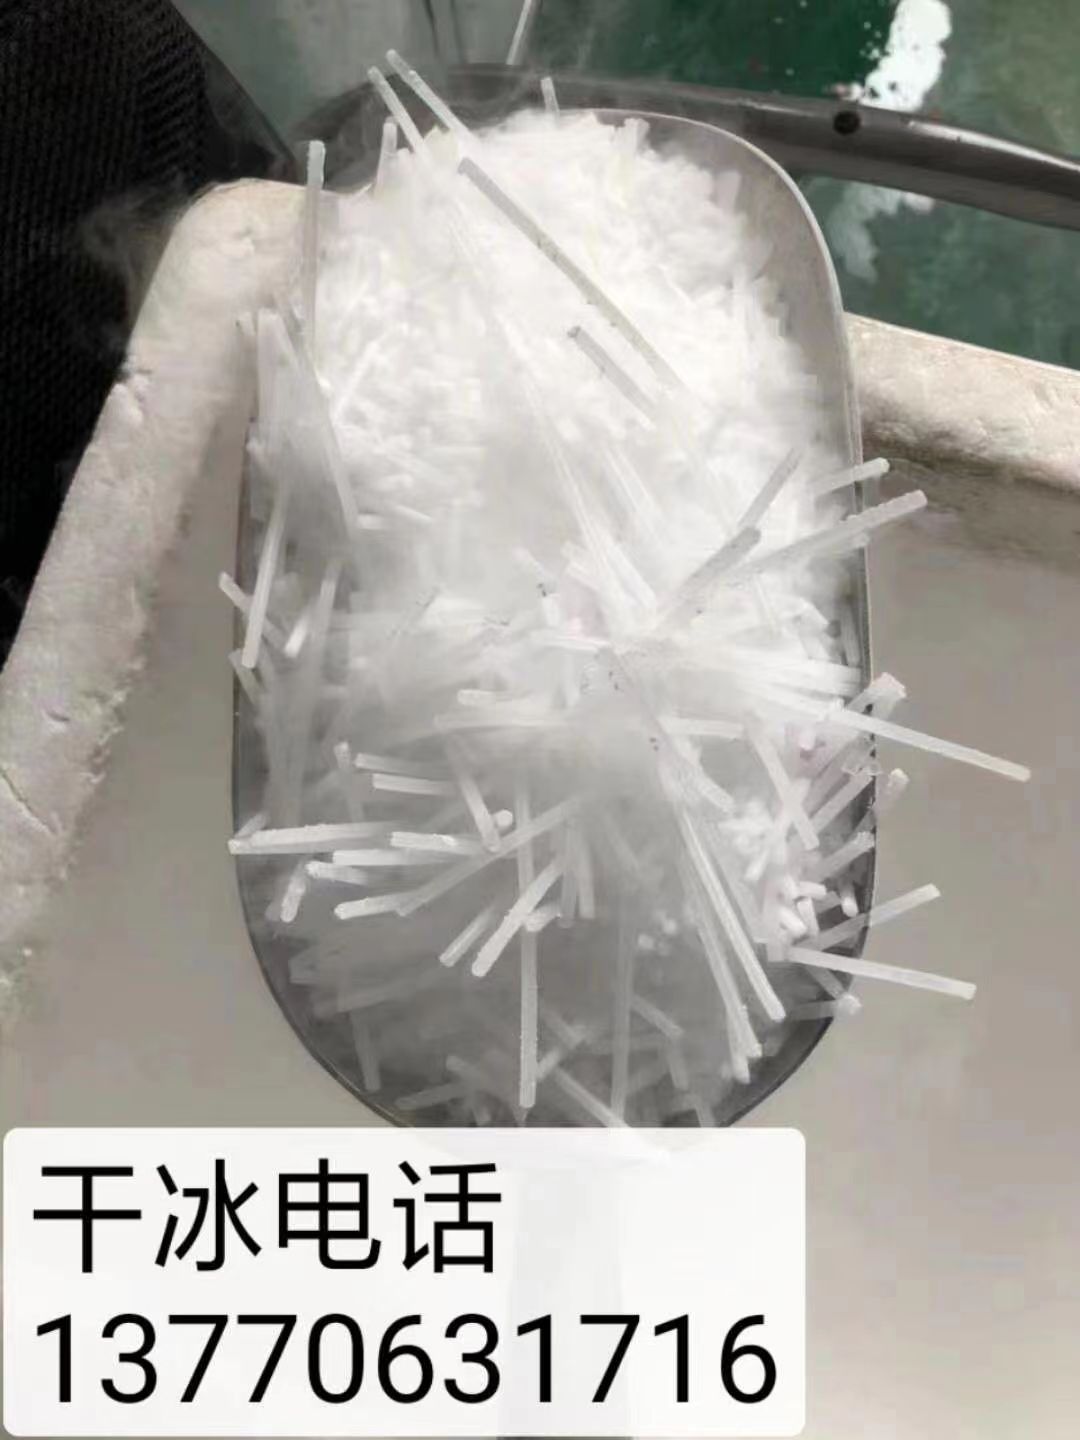 南京清洗干冰工业级干冰干冰清洗服务干冰设配什么是干冰清洗